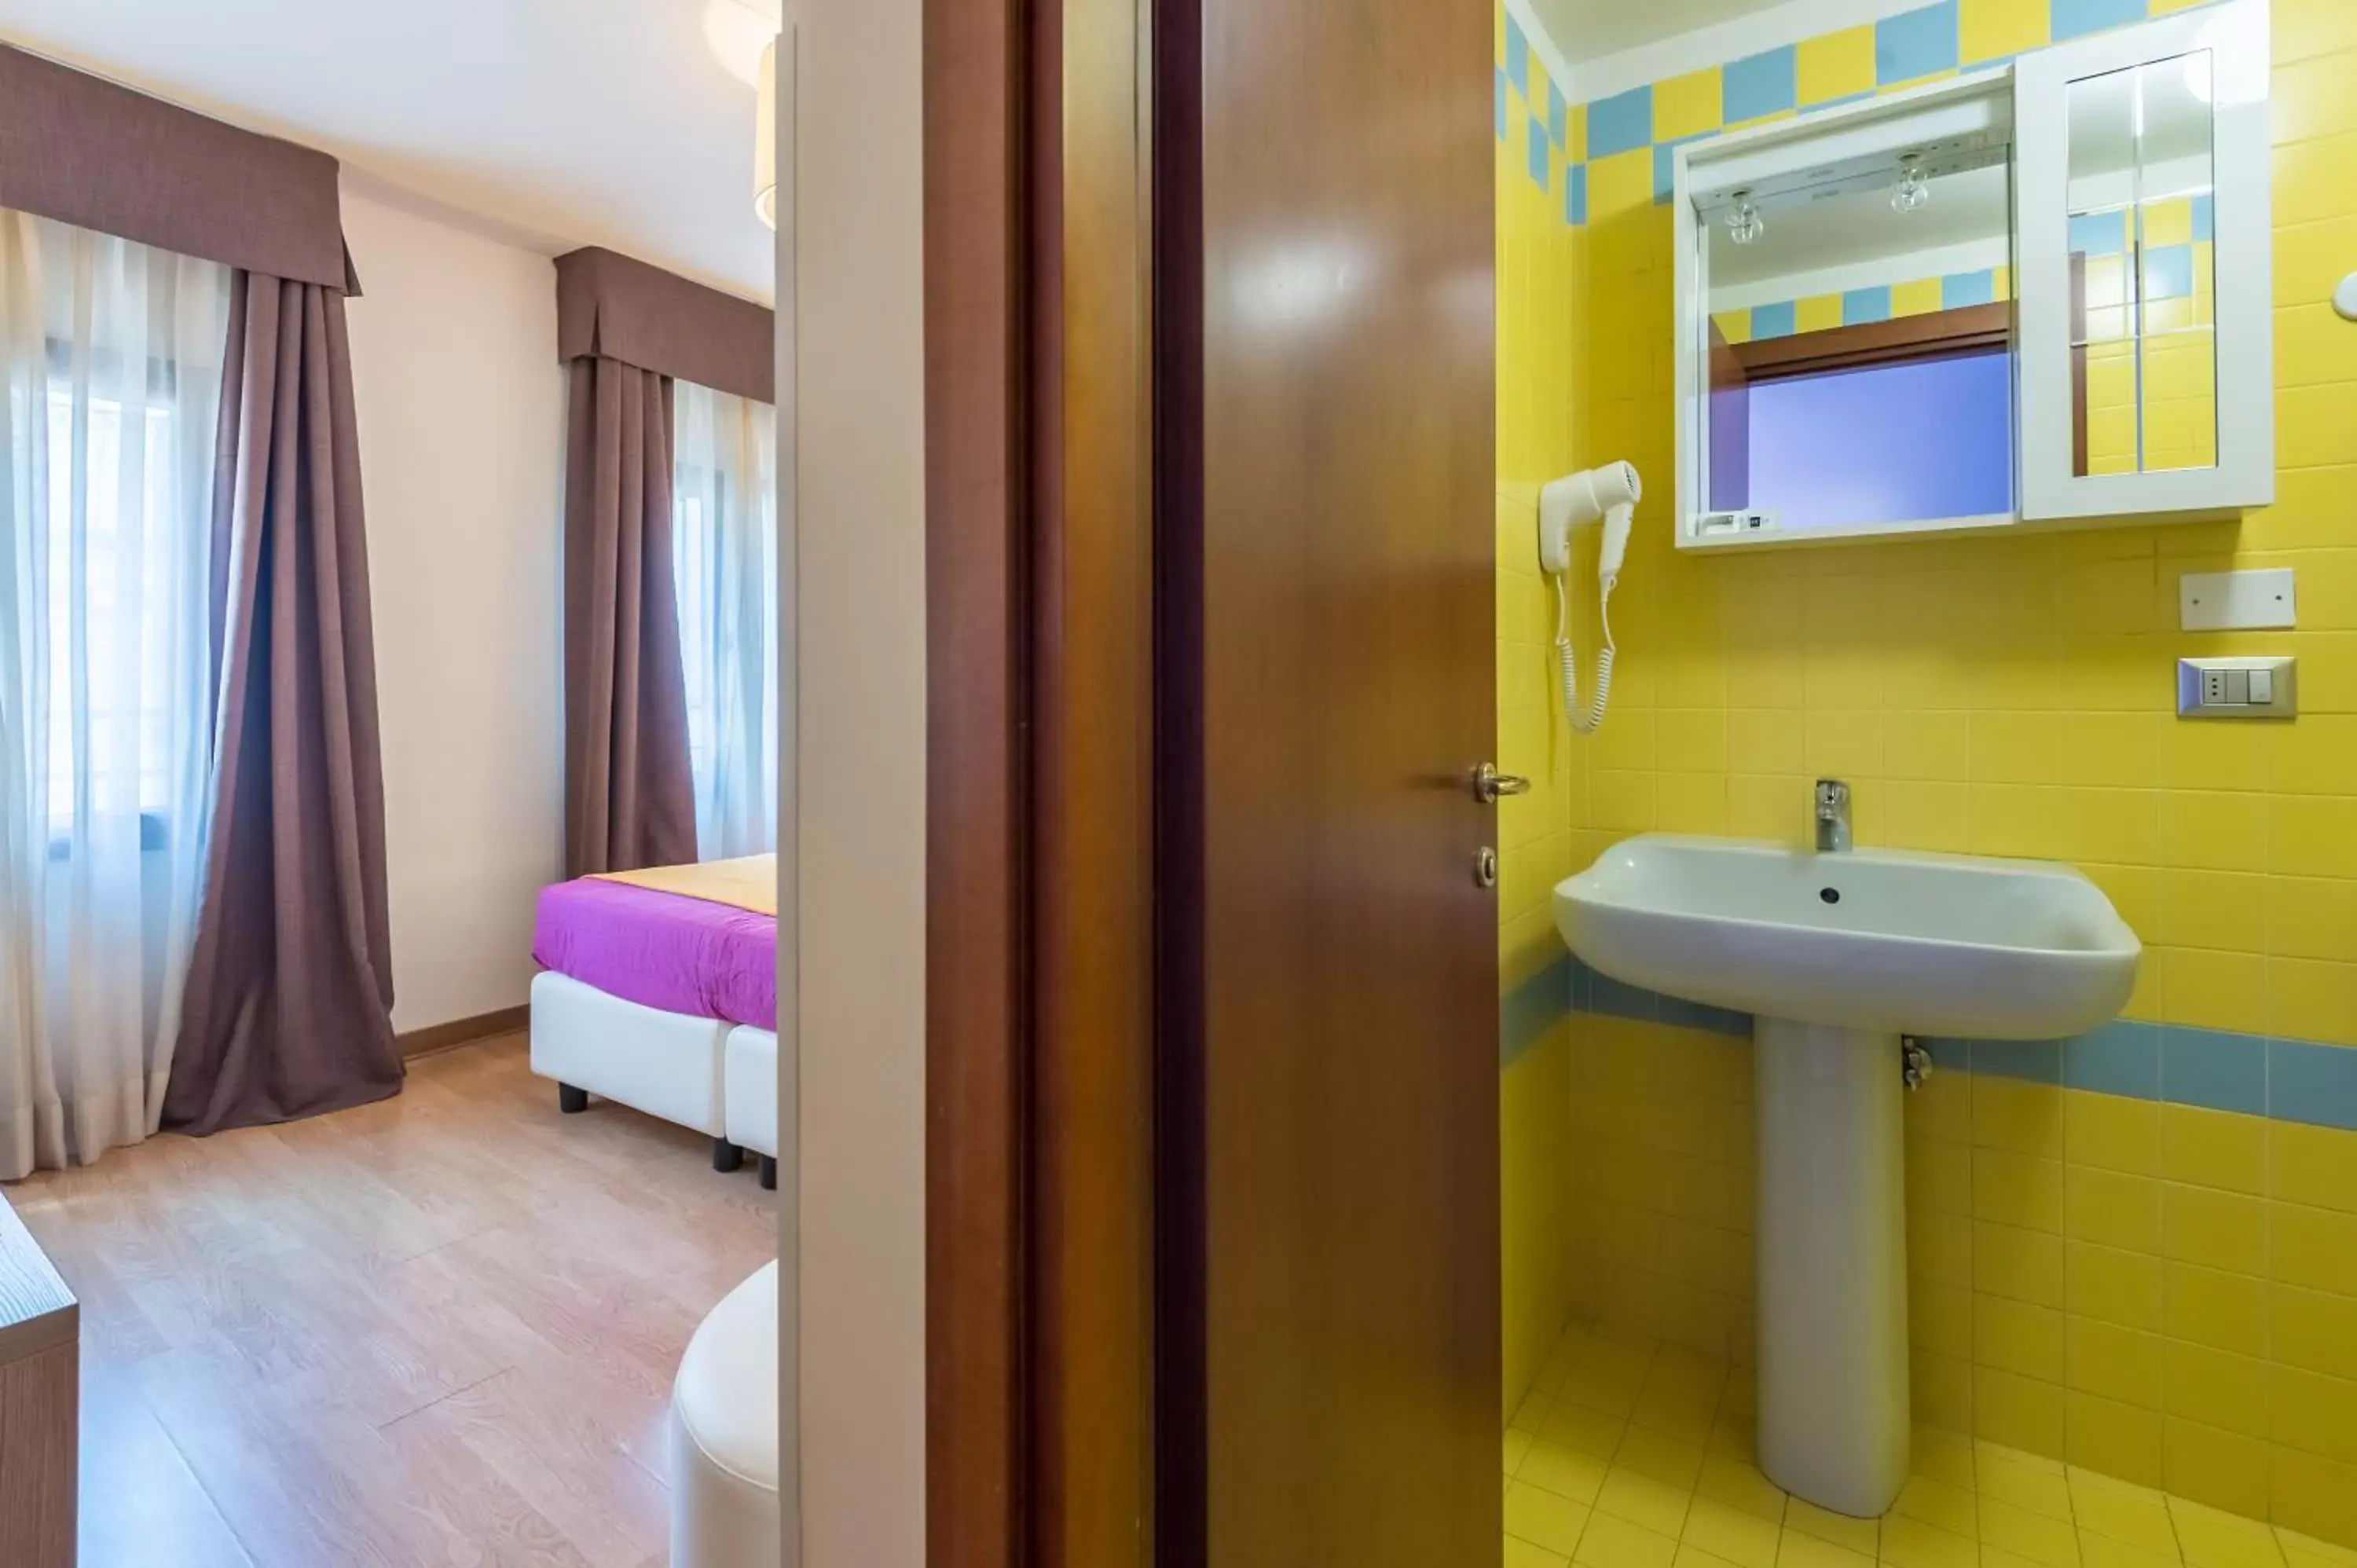 Bedroom, Bathroom in Hotel Il Moro di Venezia